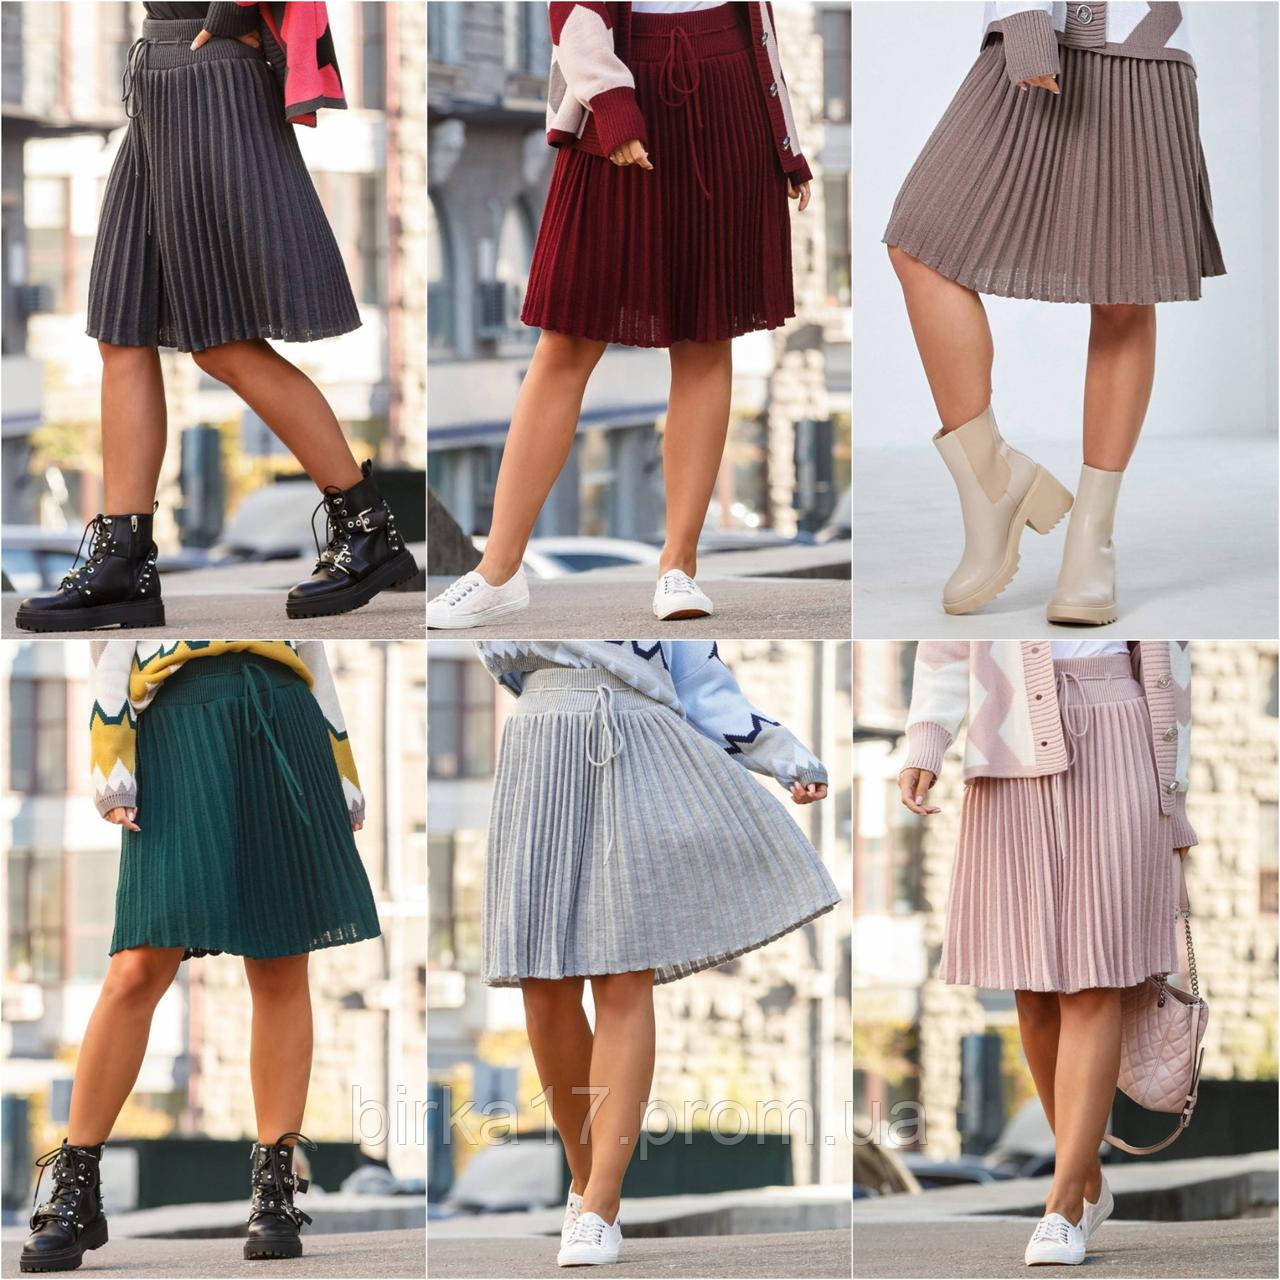 

Женская юбка плиссе мини 42-50р, юбка плиссированная однотонная, стильная однотонная юбка, Разные цвета